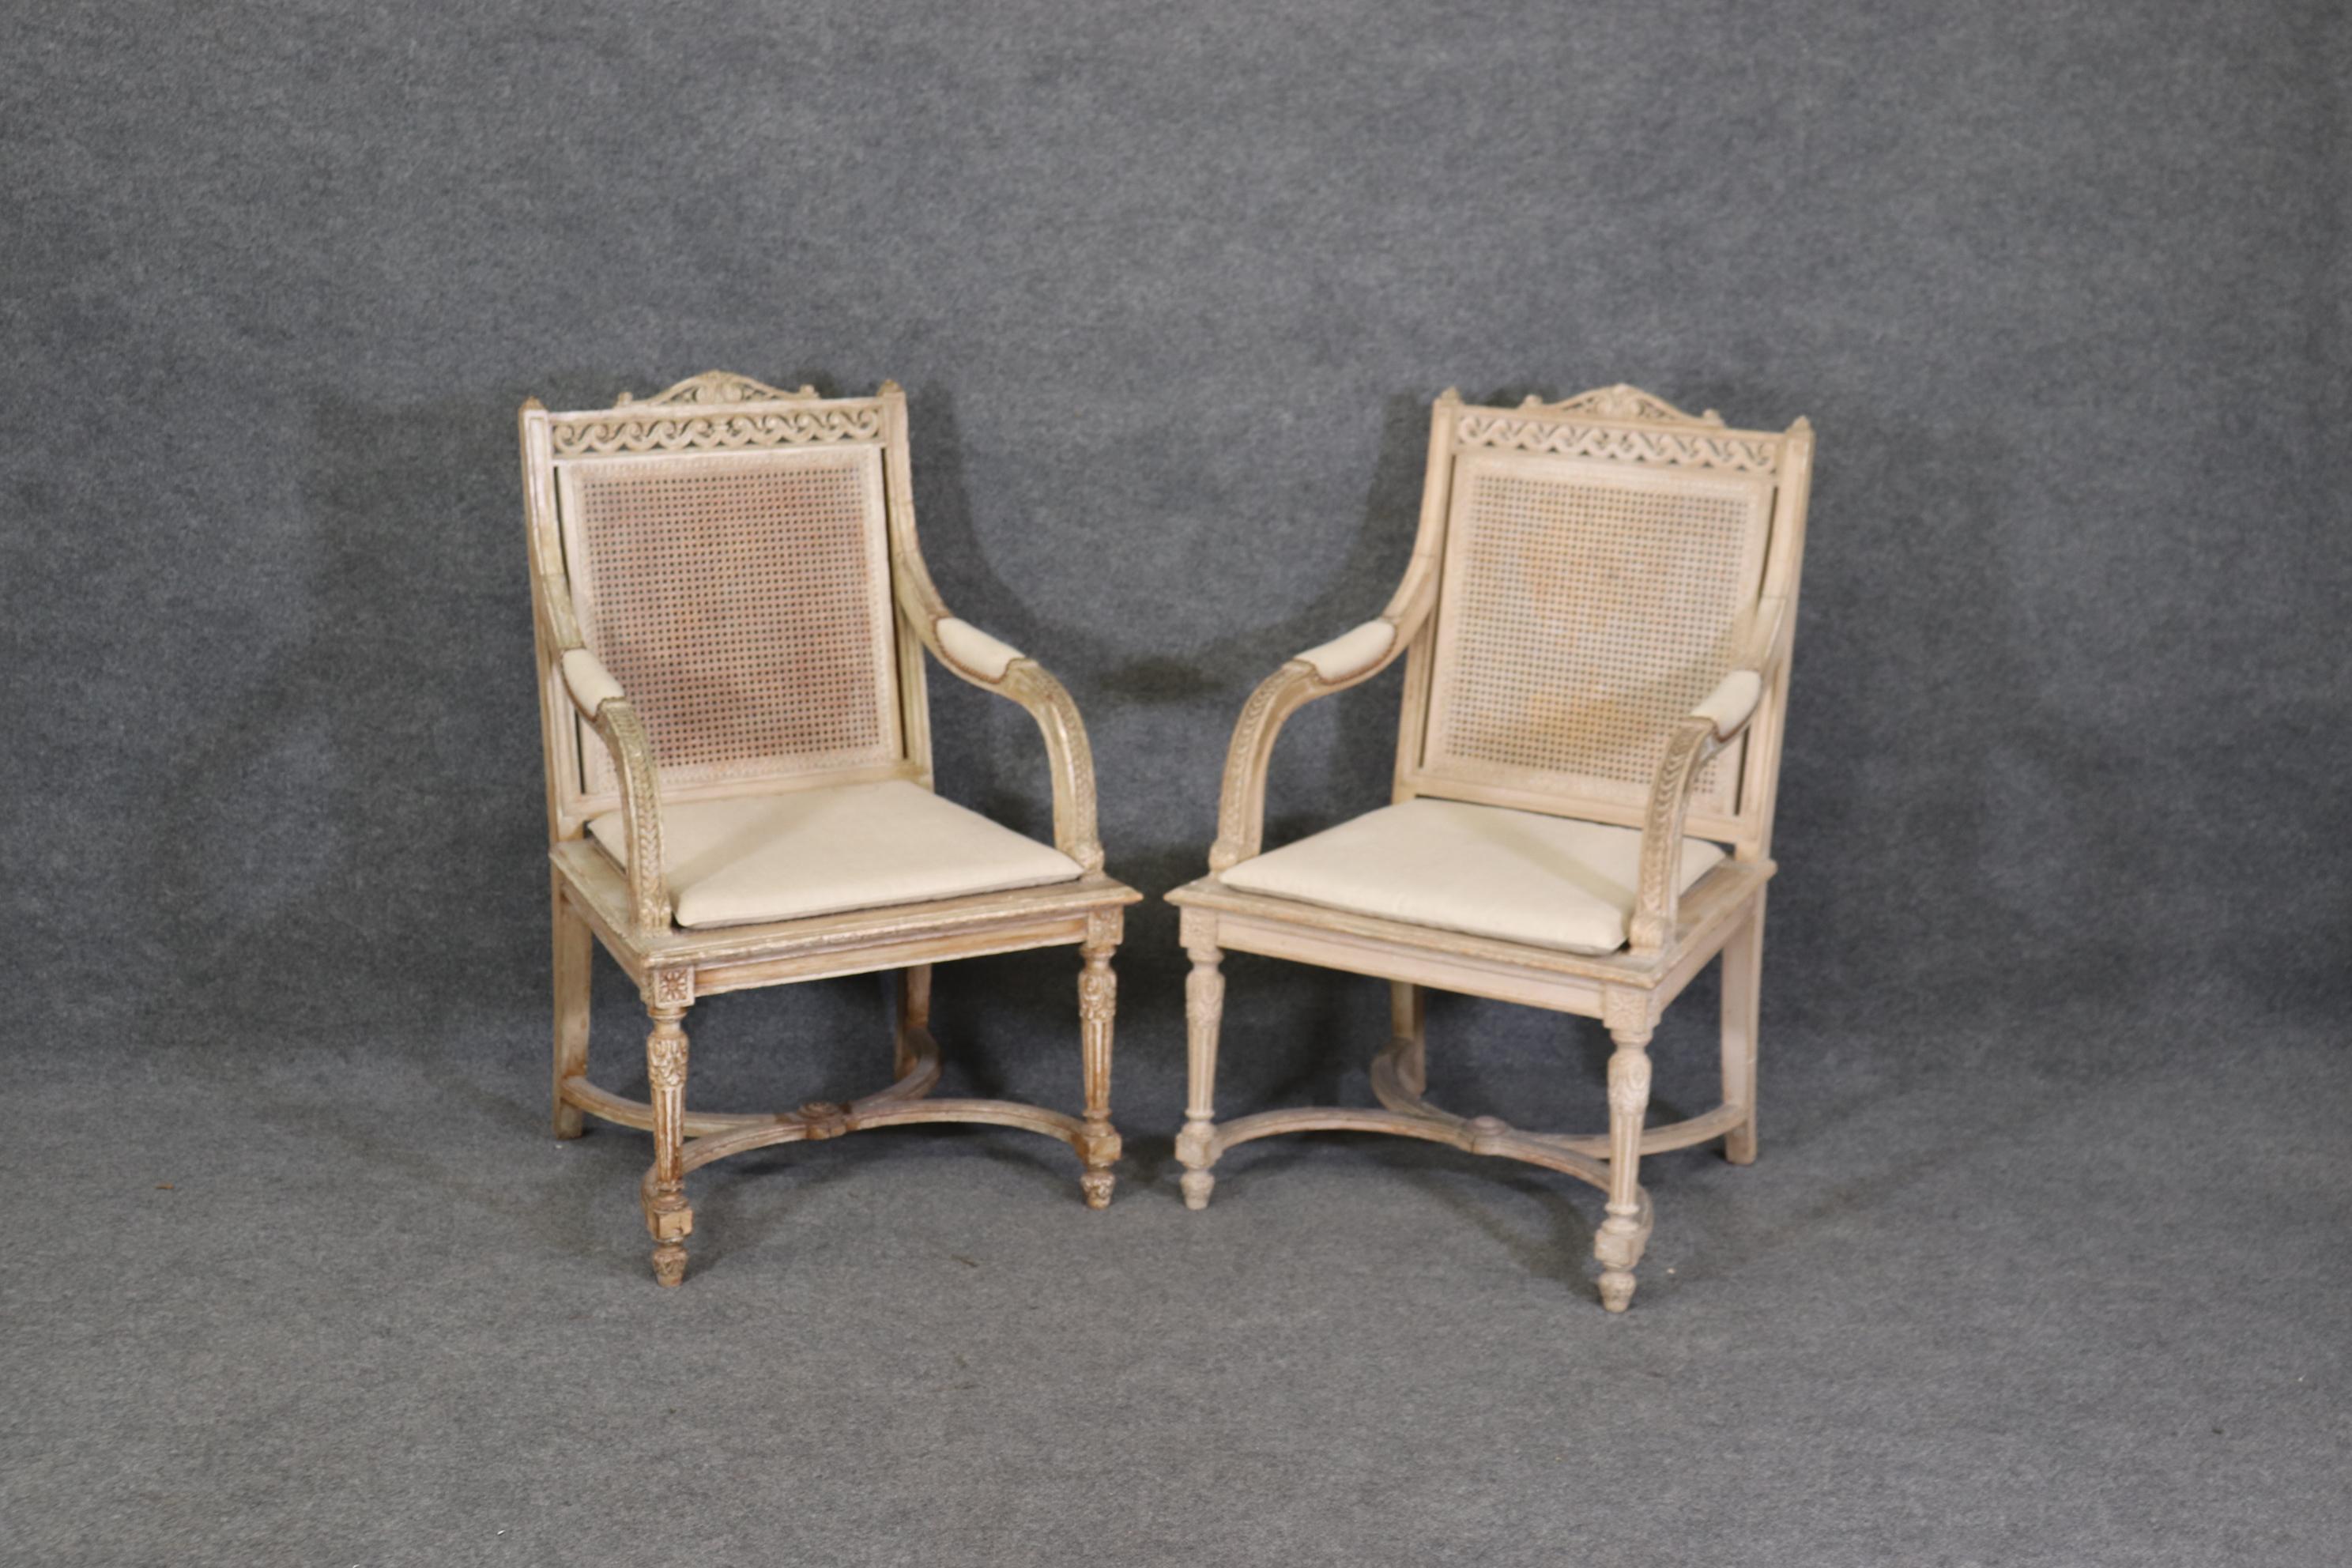 Il s'agit d'une belle paire de fauteuils anciens en canne et décorés à la peinture qui peuvent être utilisés pour la tête d'une table à manger. Les chaises sont très abîmées par le temps et présentent des pertes de peinture mais pas de dommages au